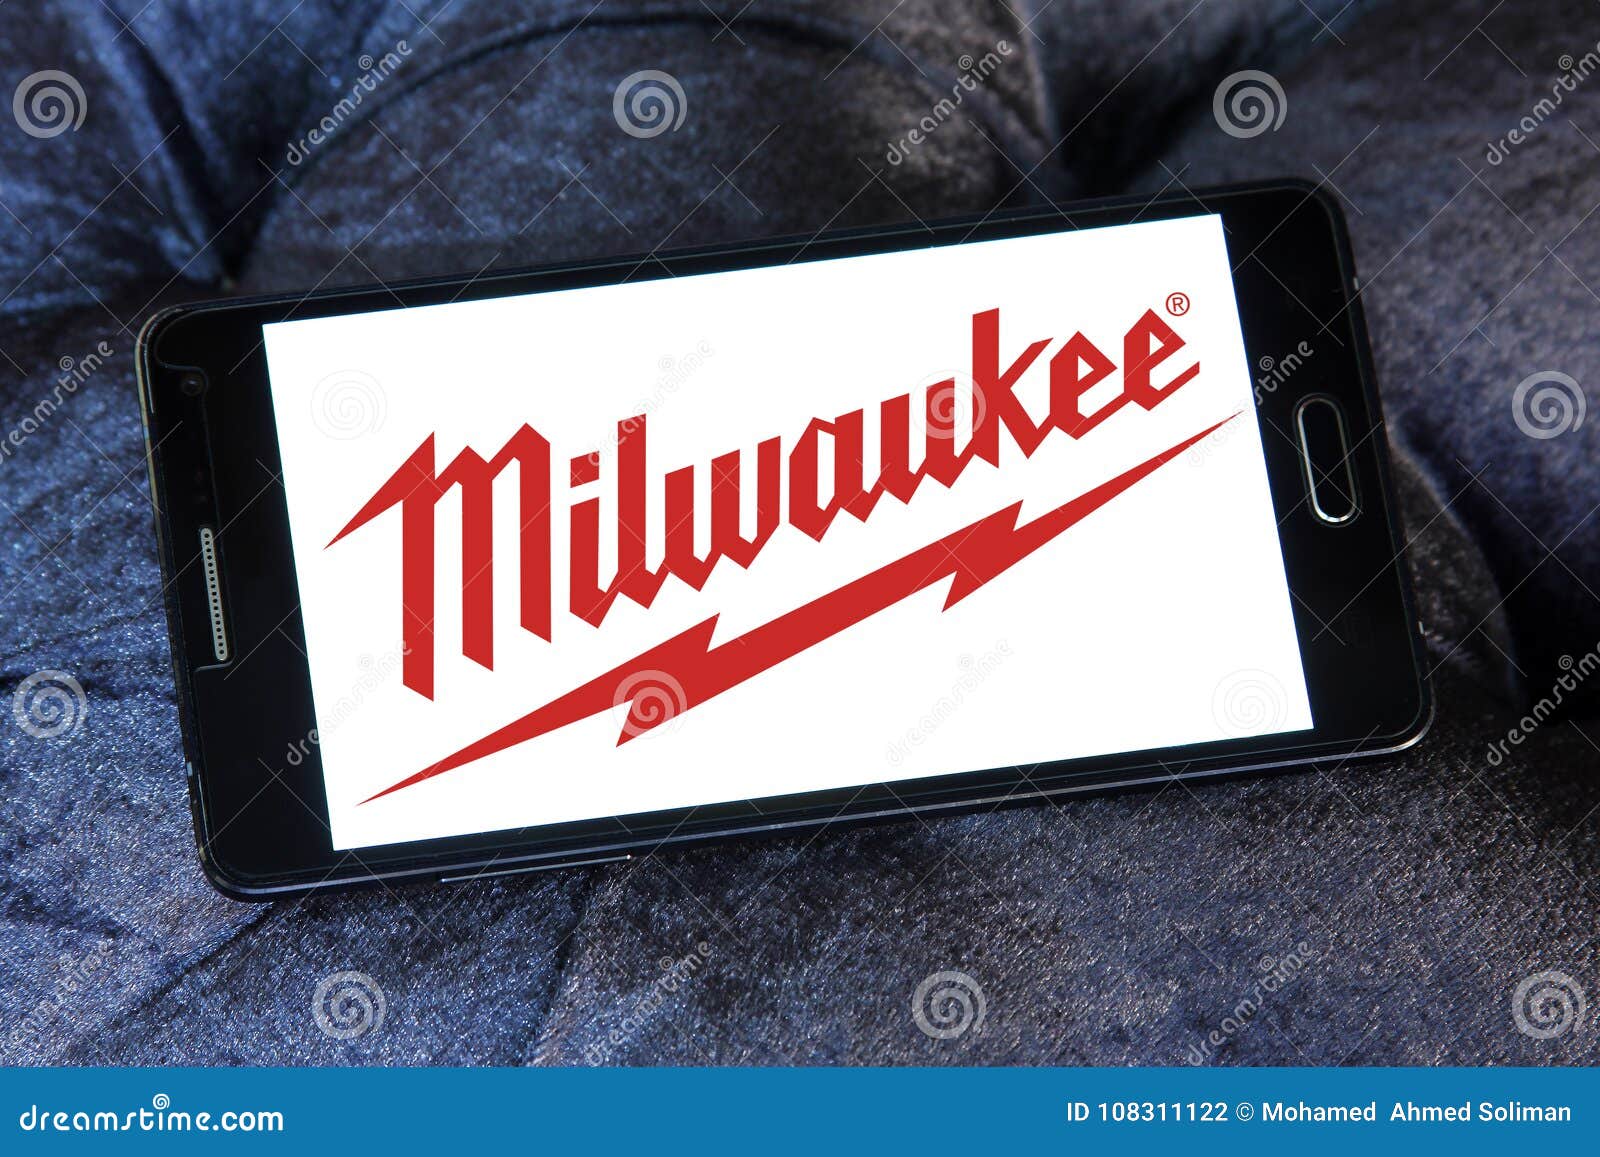 Milwaukee  toolscom